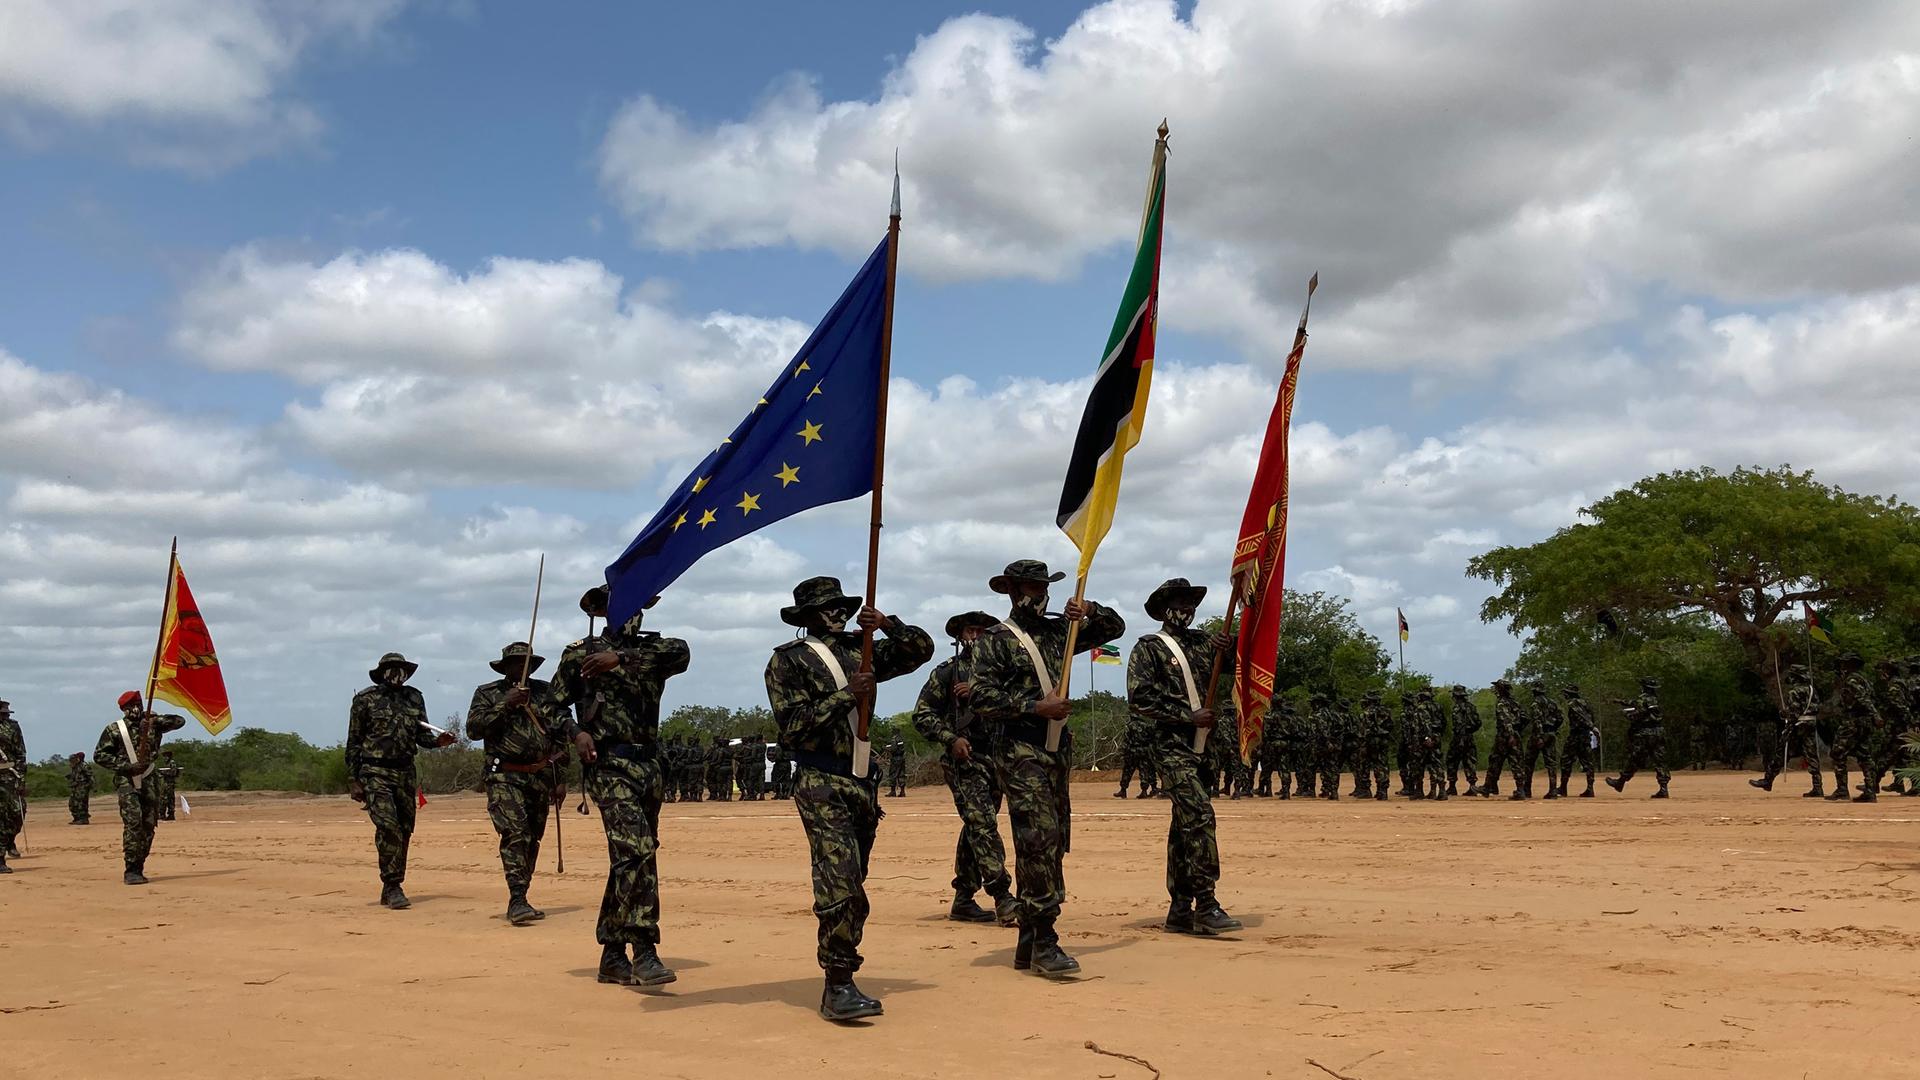 Mosambikanische Soldaten sind zu einer Formation aufgestellt und präsentieren Fahnen, darunter auch die der EU.